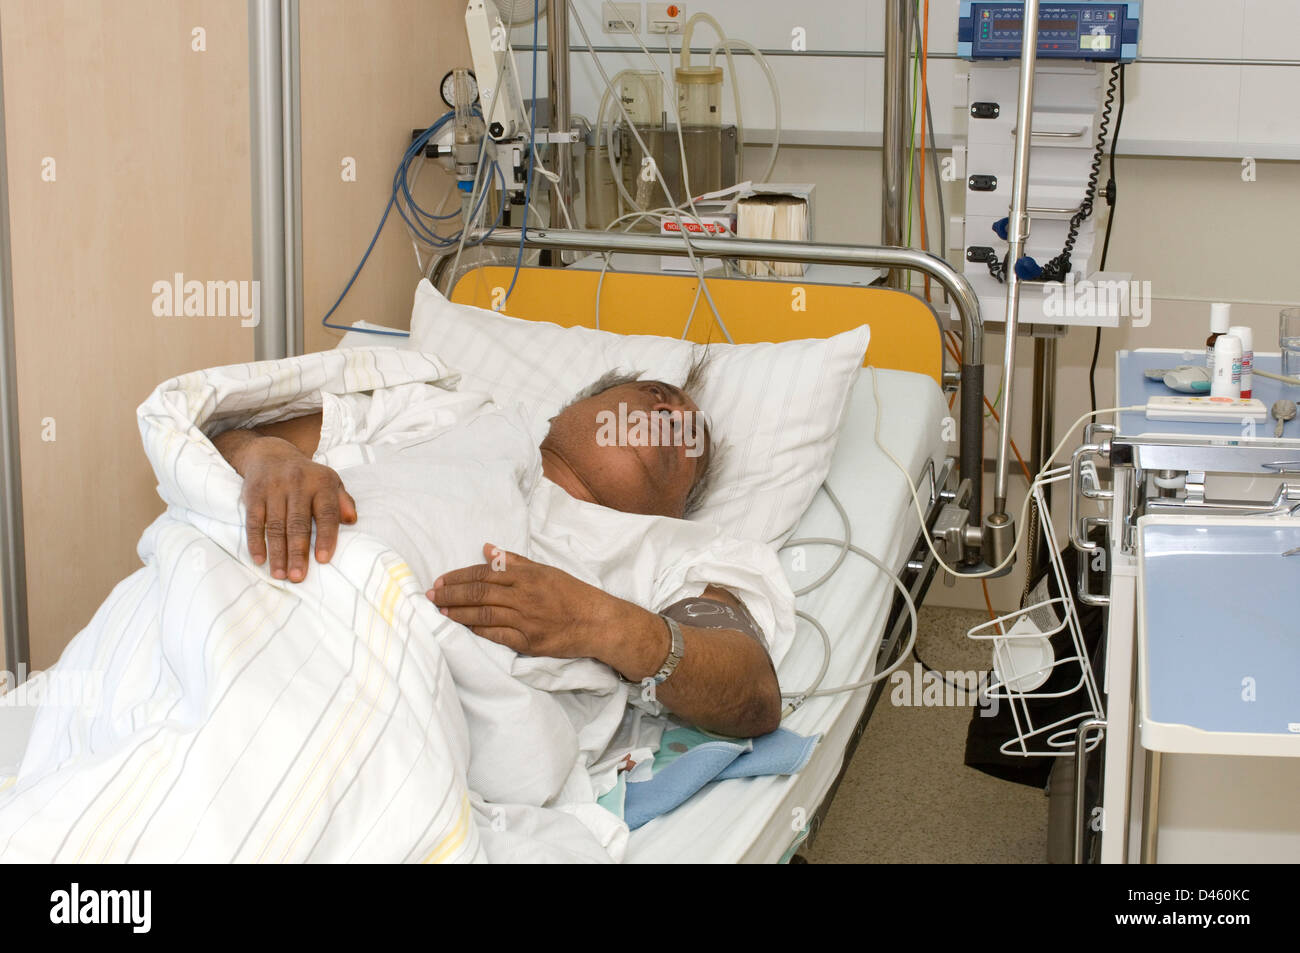 Un hombre descansando en un departamento de accidentes y urgencias del hospital después de ser admitido con fuertes dolores de estómago. Foto de stock